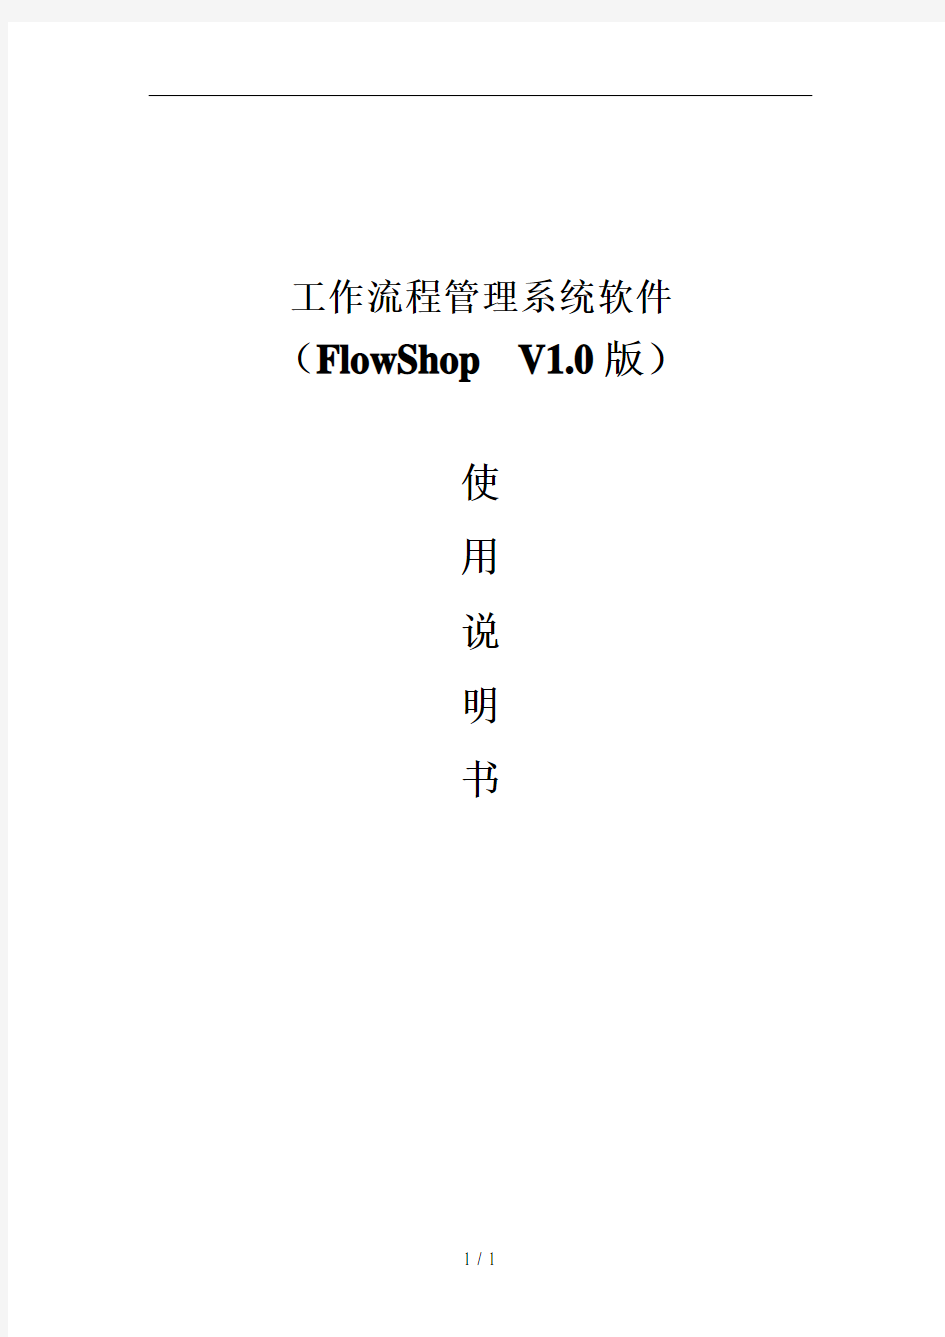 工作流管理系统_FlowShop使用说明_V1.0